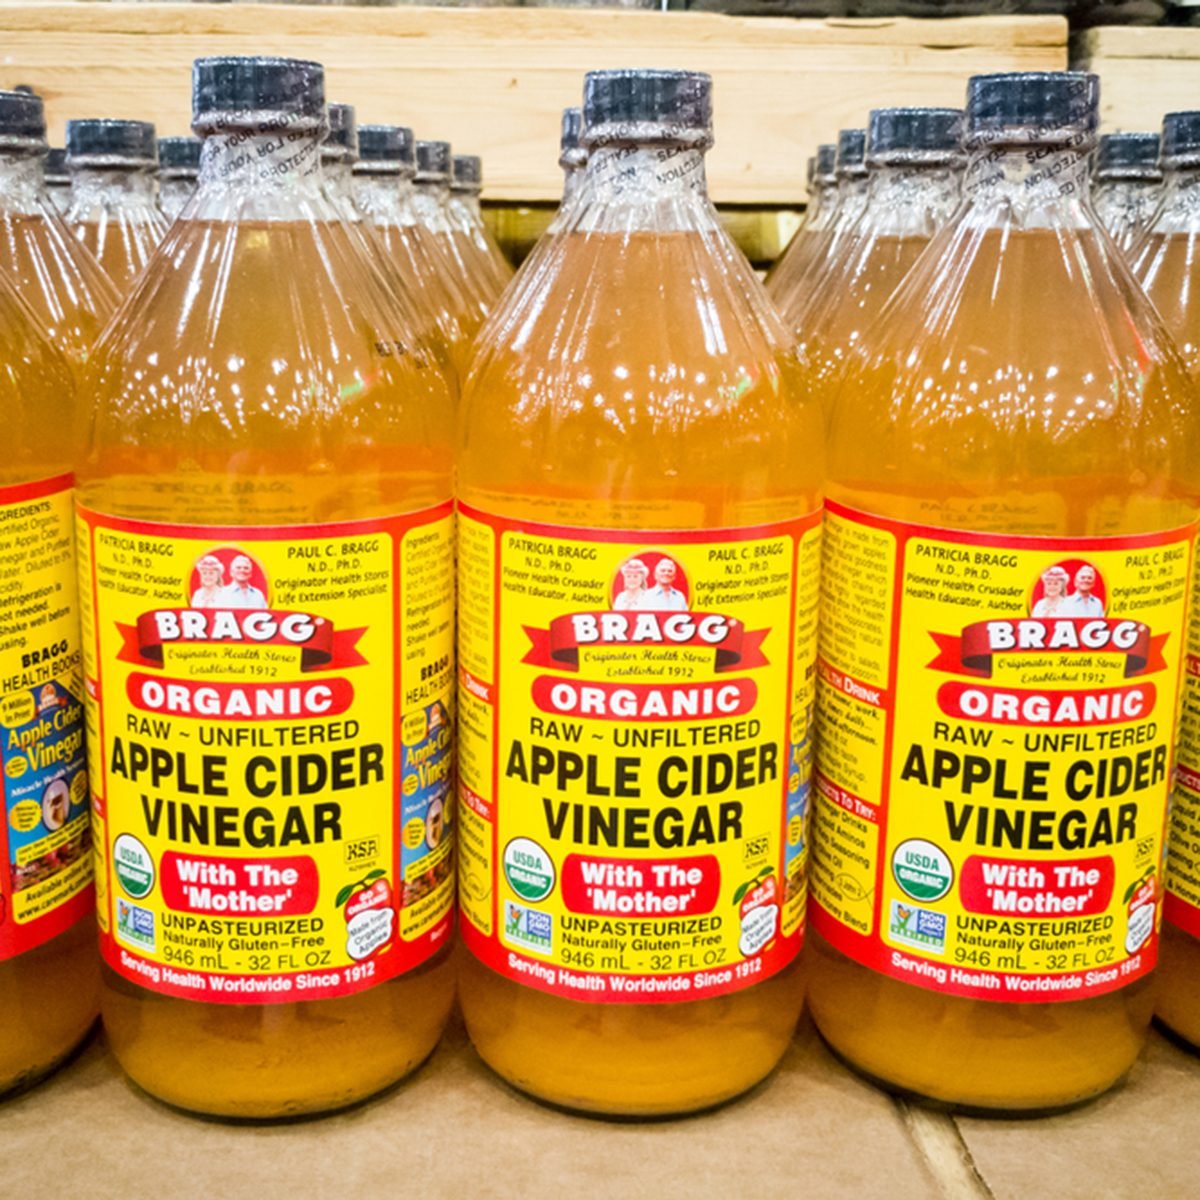 10 Ways To Use Apple Cider Vinegar, Apple Cider Vinegar To Clean Hardwood Floors